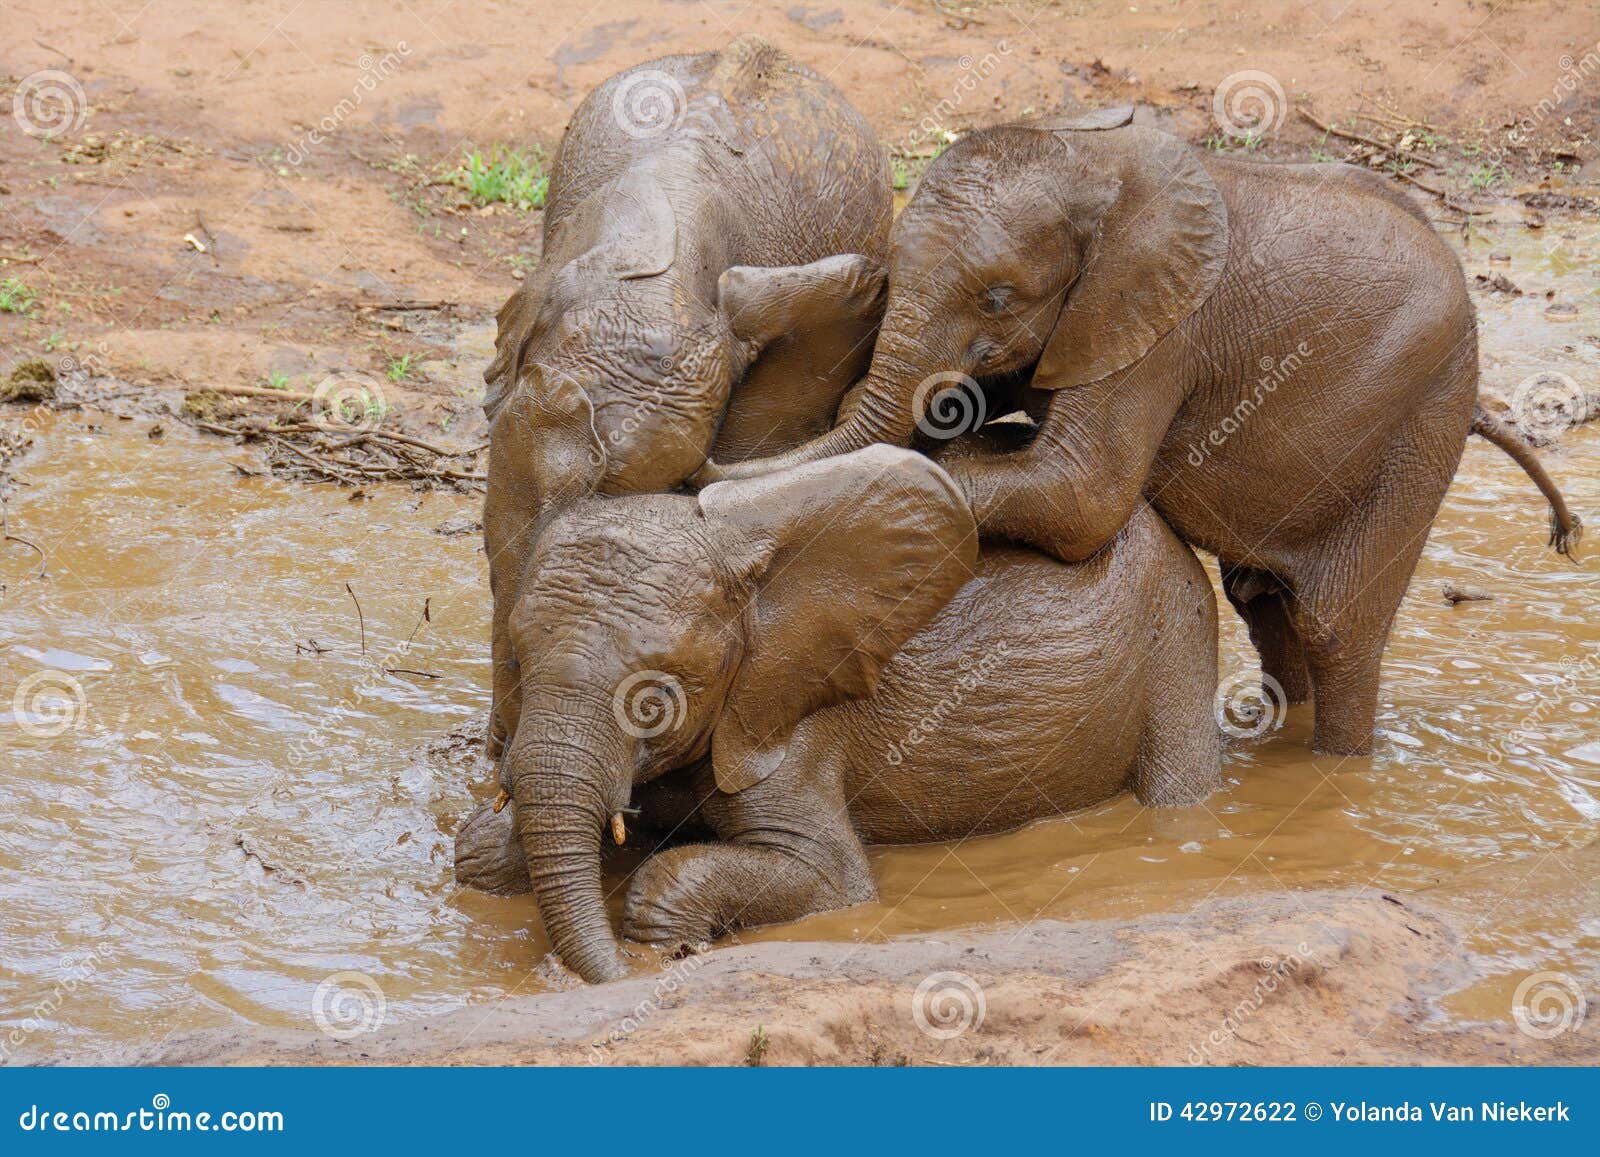 playful baby elephants